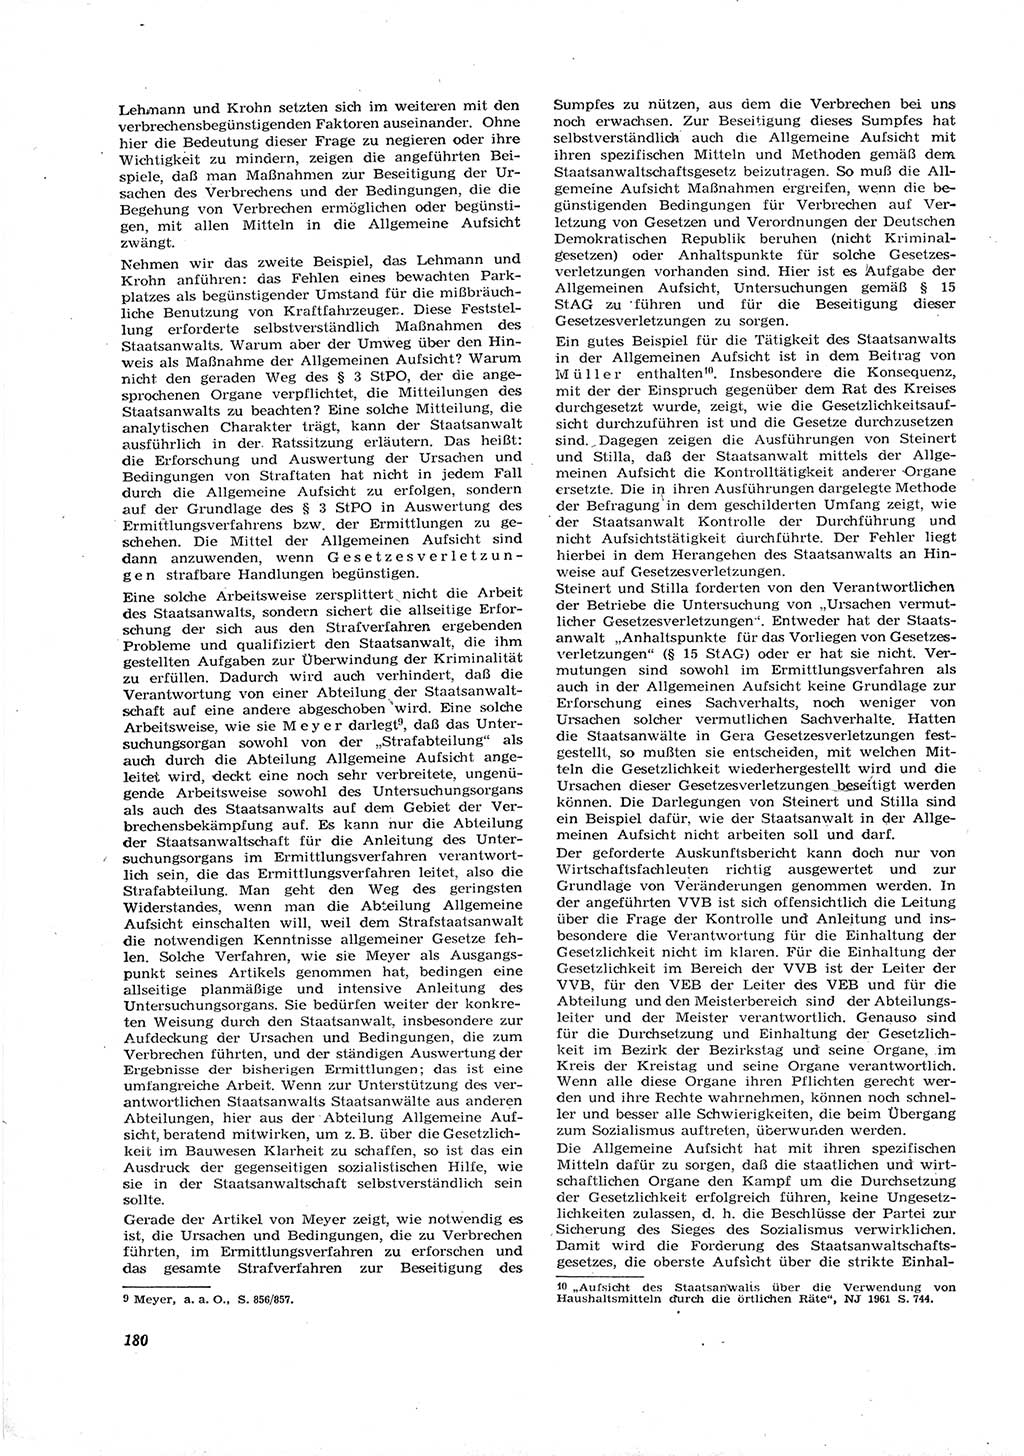 Neue Justiz (NJ), Zeitschrift für Recht und Rechtswissenschaft [Deutsche Demokratische Republik (DDR)], 16. Jahrgang 1962, Seite 180 (NJ DDR 1962, S. 180)